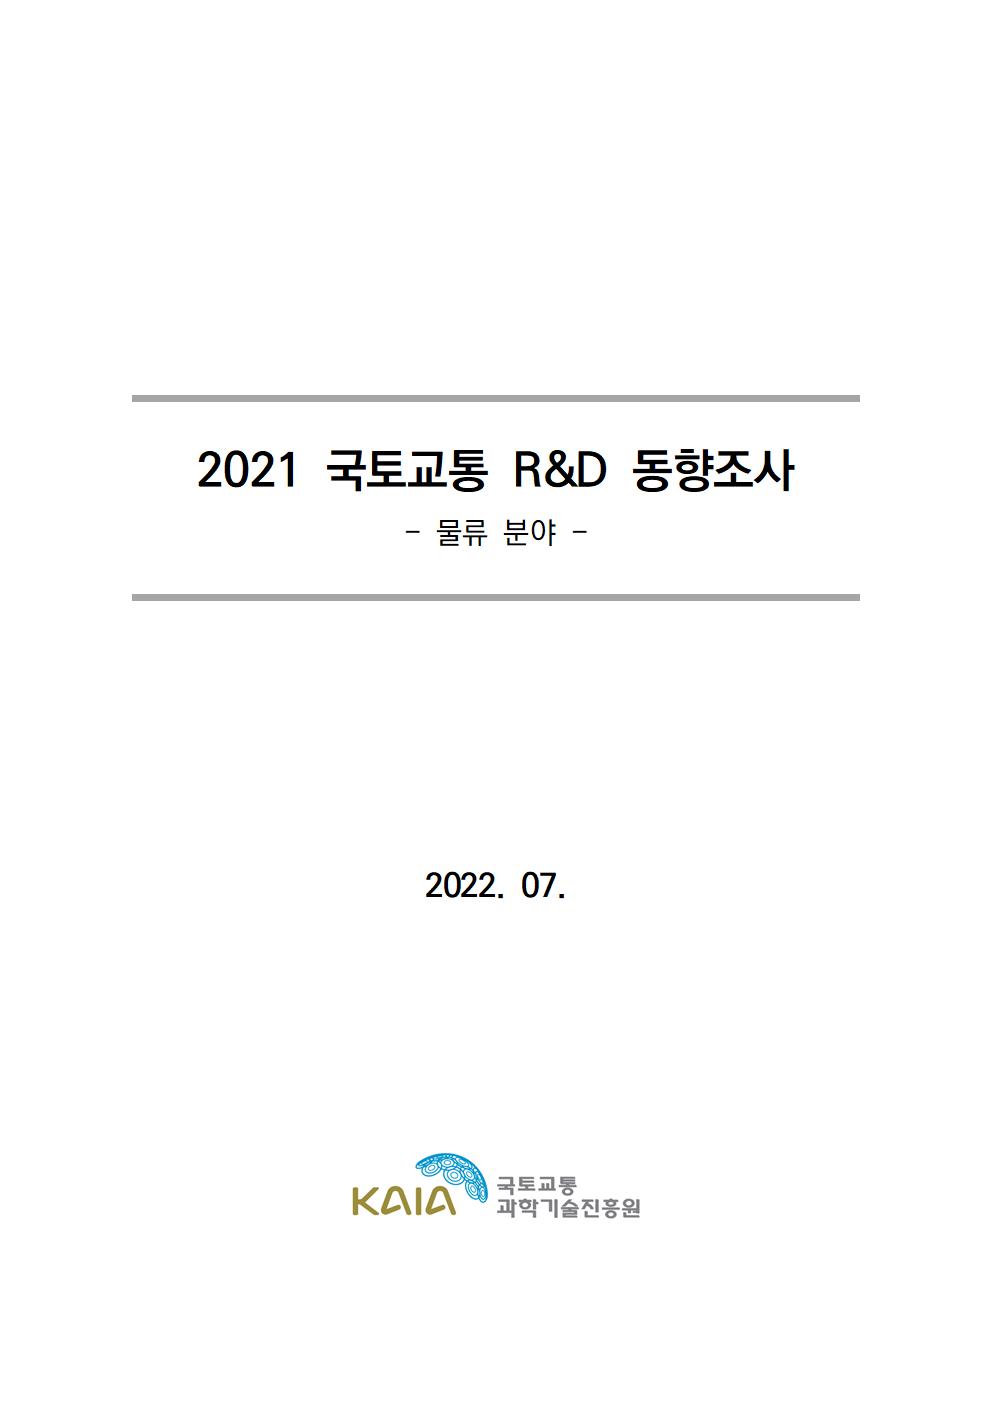 [동향조사] 2021 국토교통 R&D 동향조사 보고서(물류 분야) 